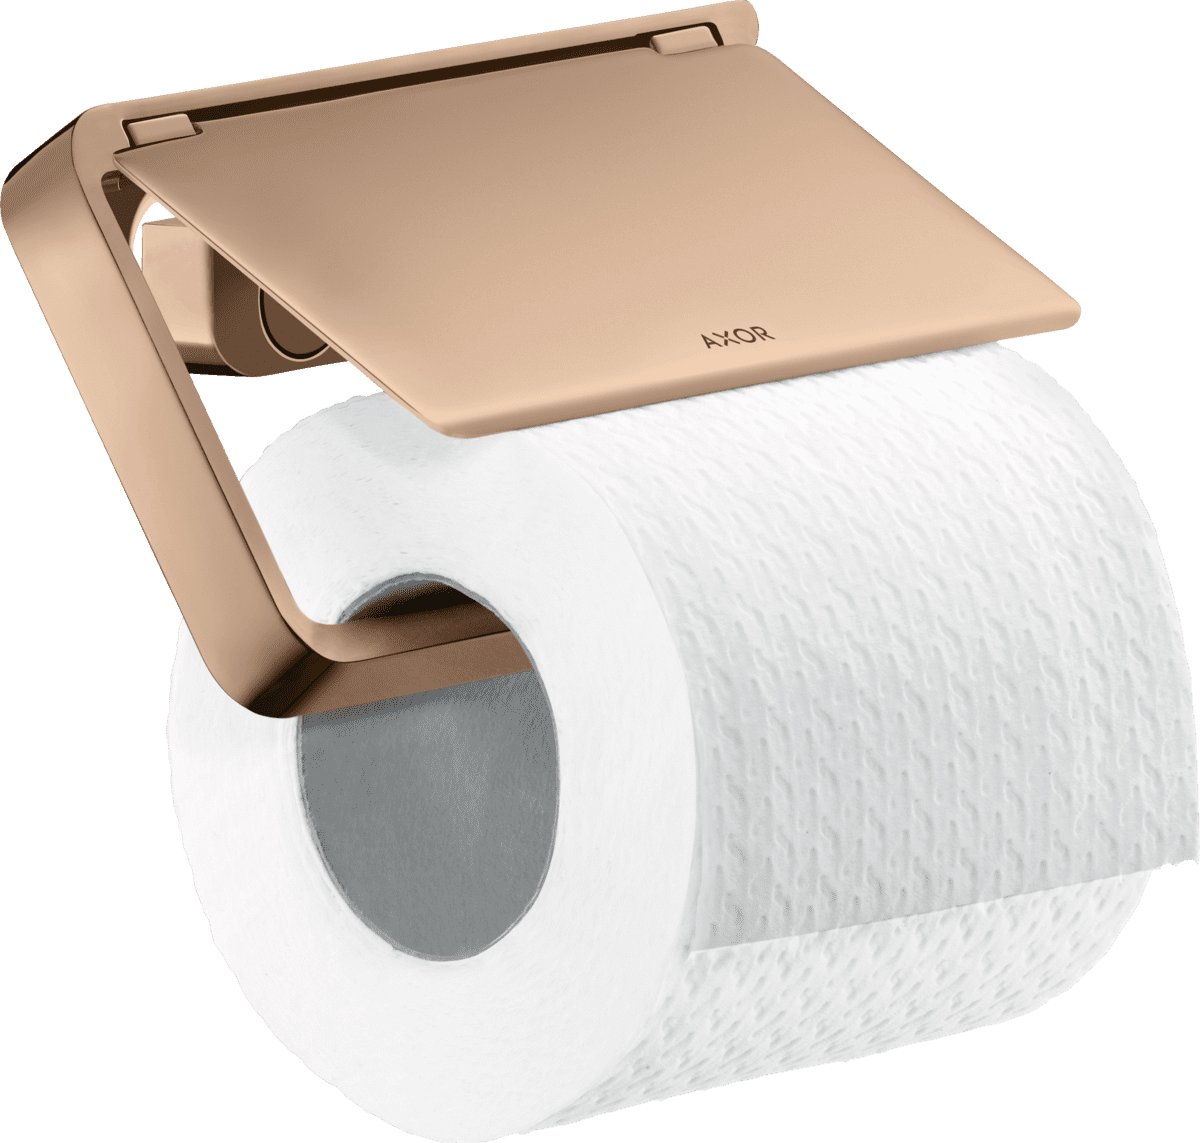 εικόνα του HANSGROHE AXOR Universal Softsquare Toilet paper holder with cover #42836300 - Polished Red Gold